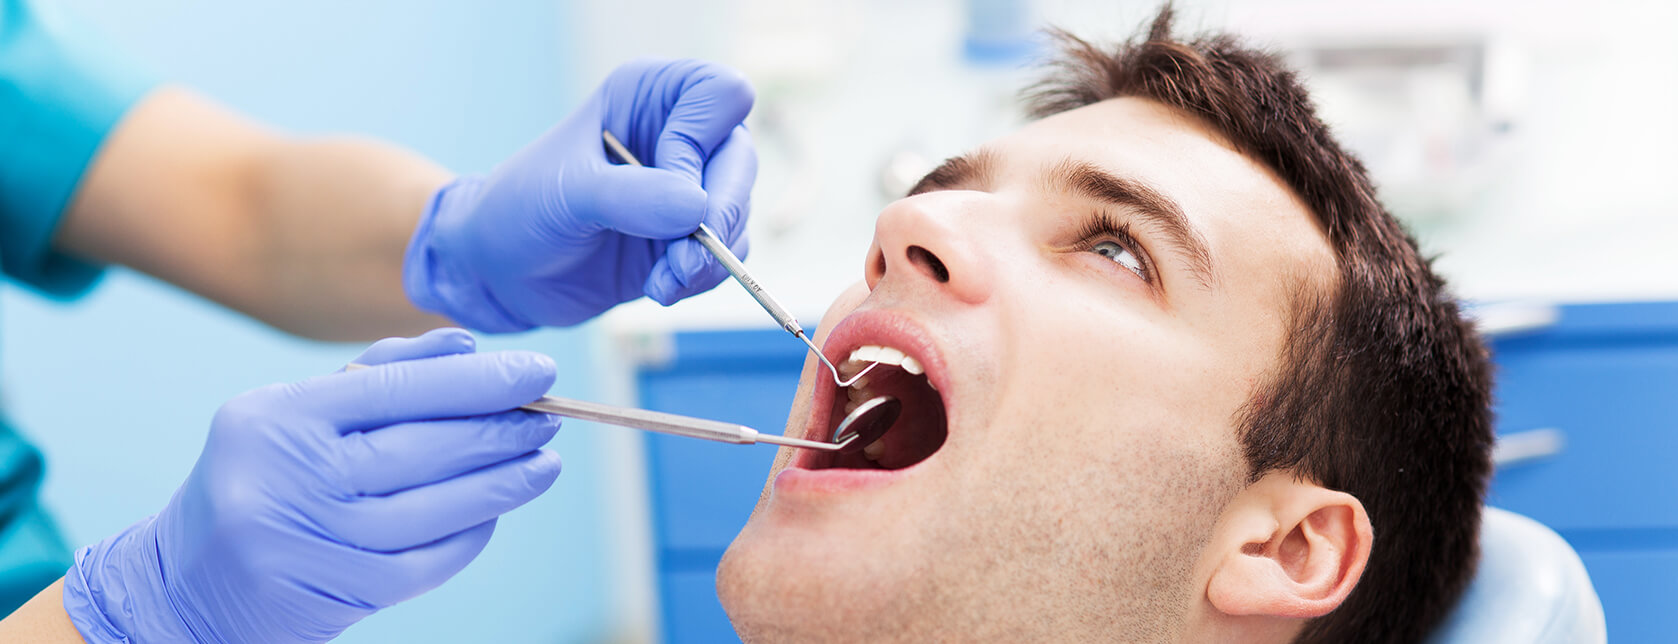 dental patient undergoing a dental examination